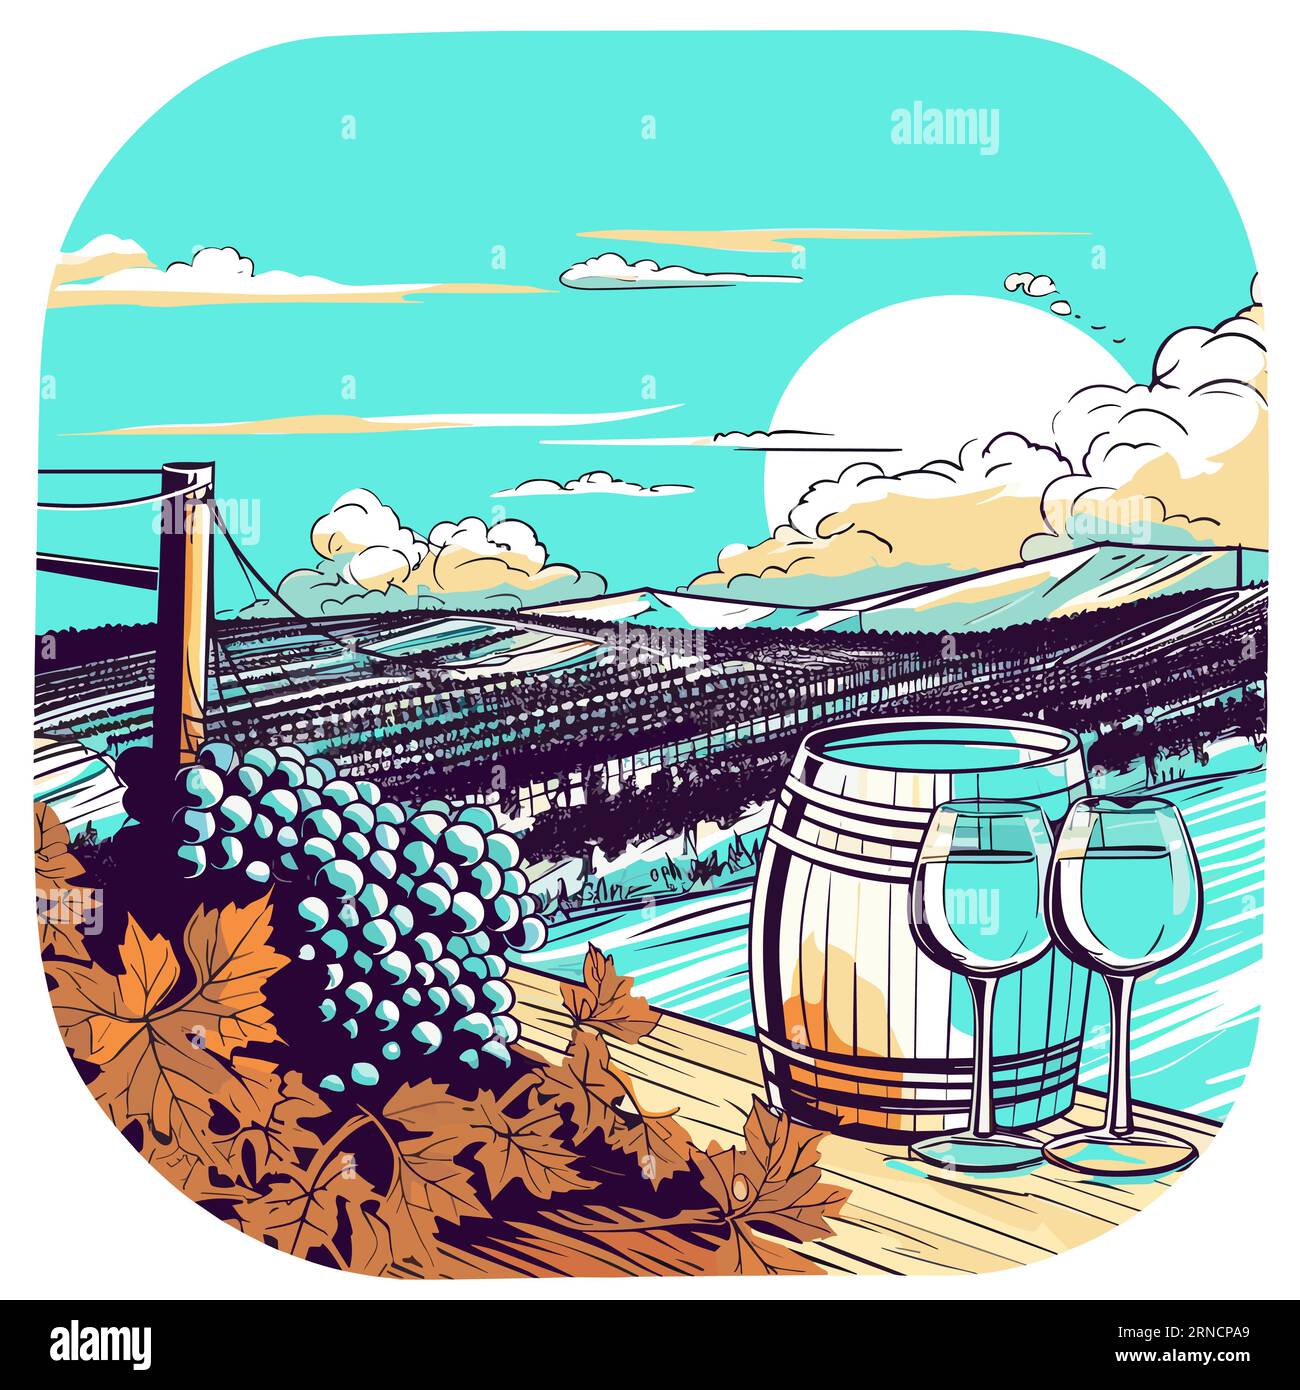 Eine Aquarell-Illustration von Trauben Weinen Fässern und Weinberg, im Stil der Pop Art Cartoonish Illustration, Küstenlandschaften, Fisheye-Effekte, Stock Vektor